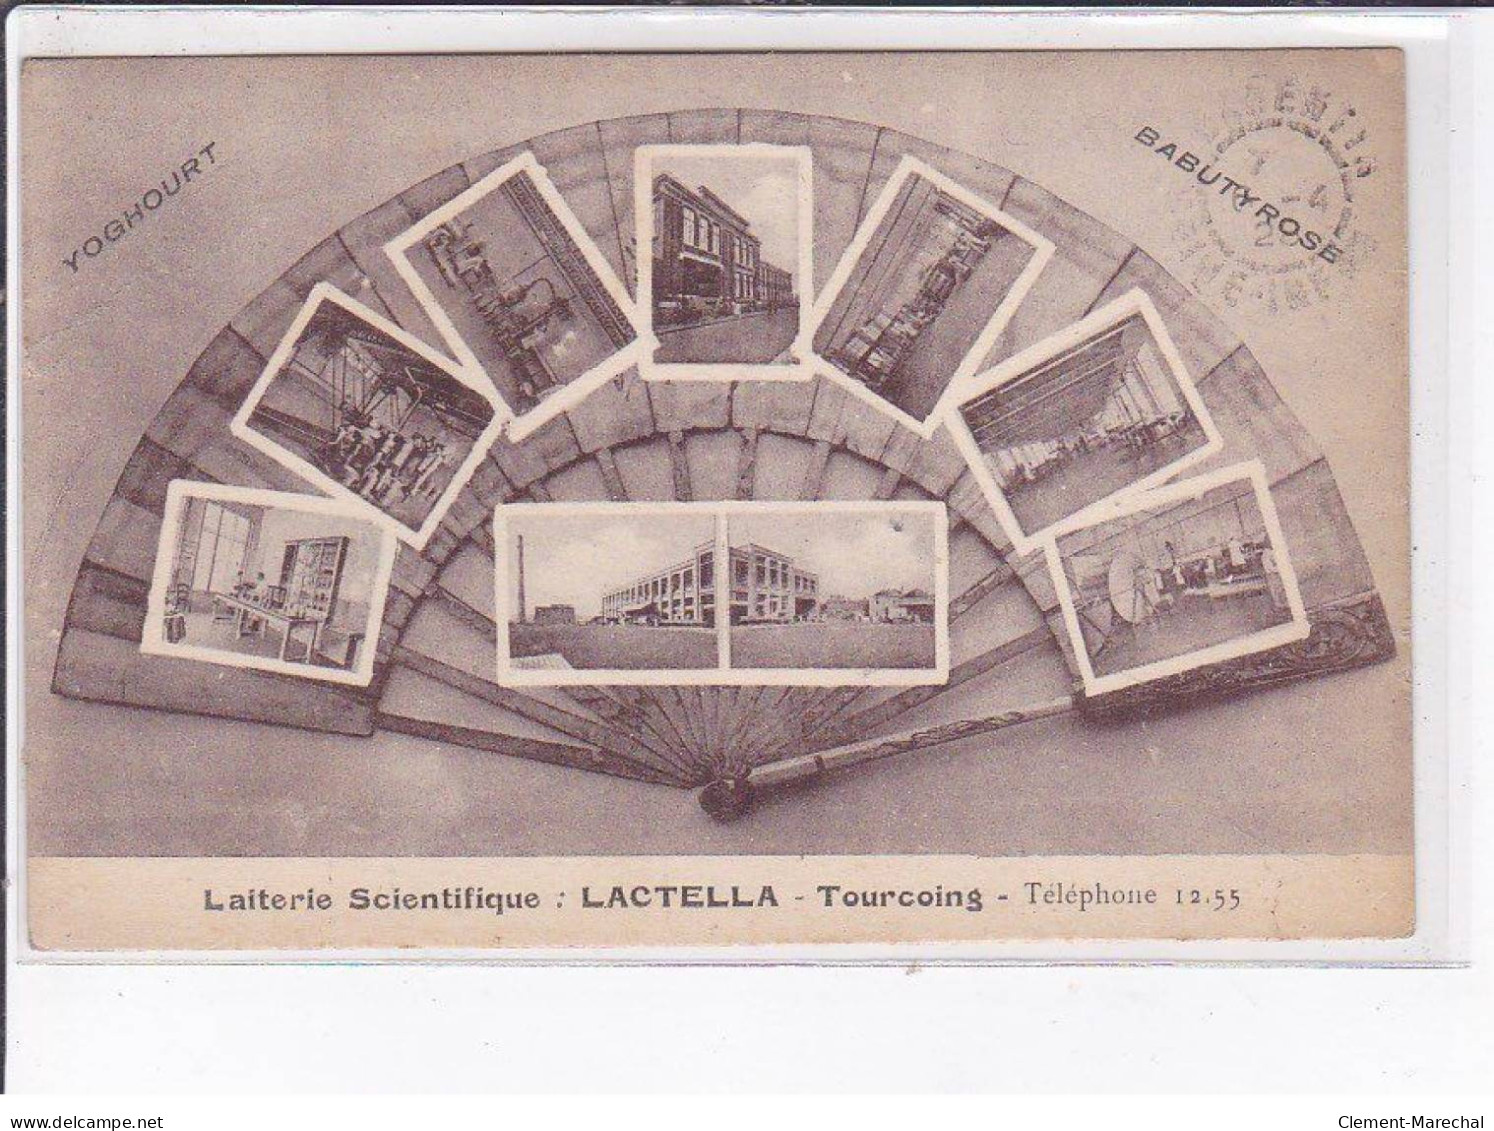 TOURCOING: Lactella, Laiterie Scientifique - état - Tourcoing